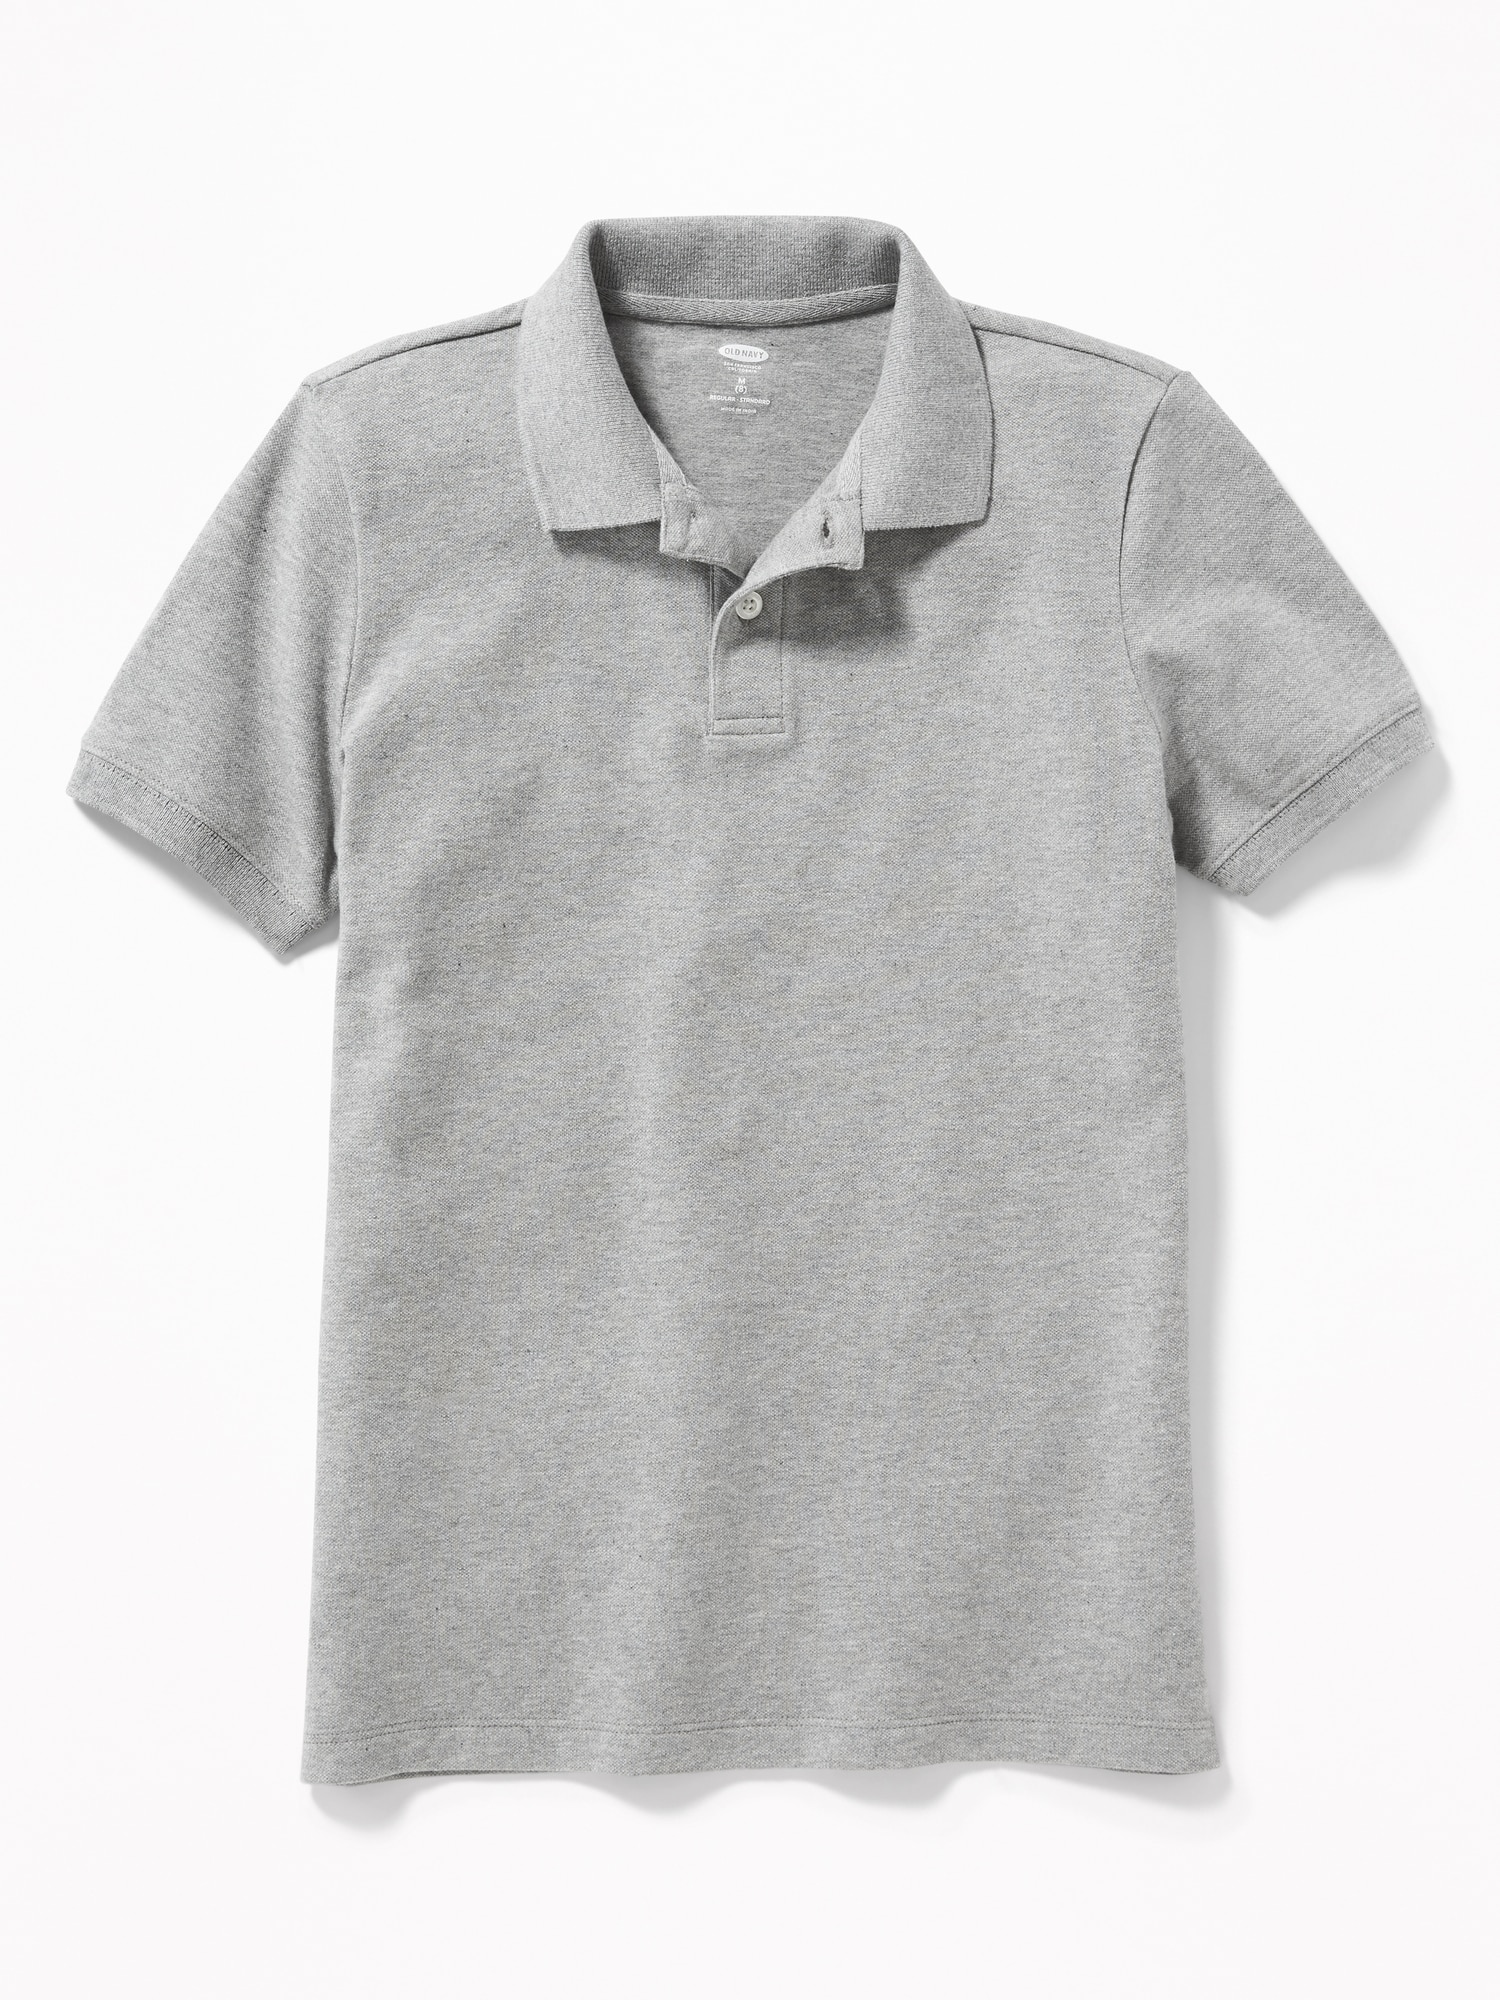 Old Navy School Uniform Pique Polo Shirt for Boys gray. 1